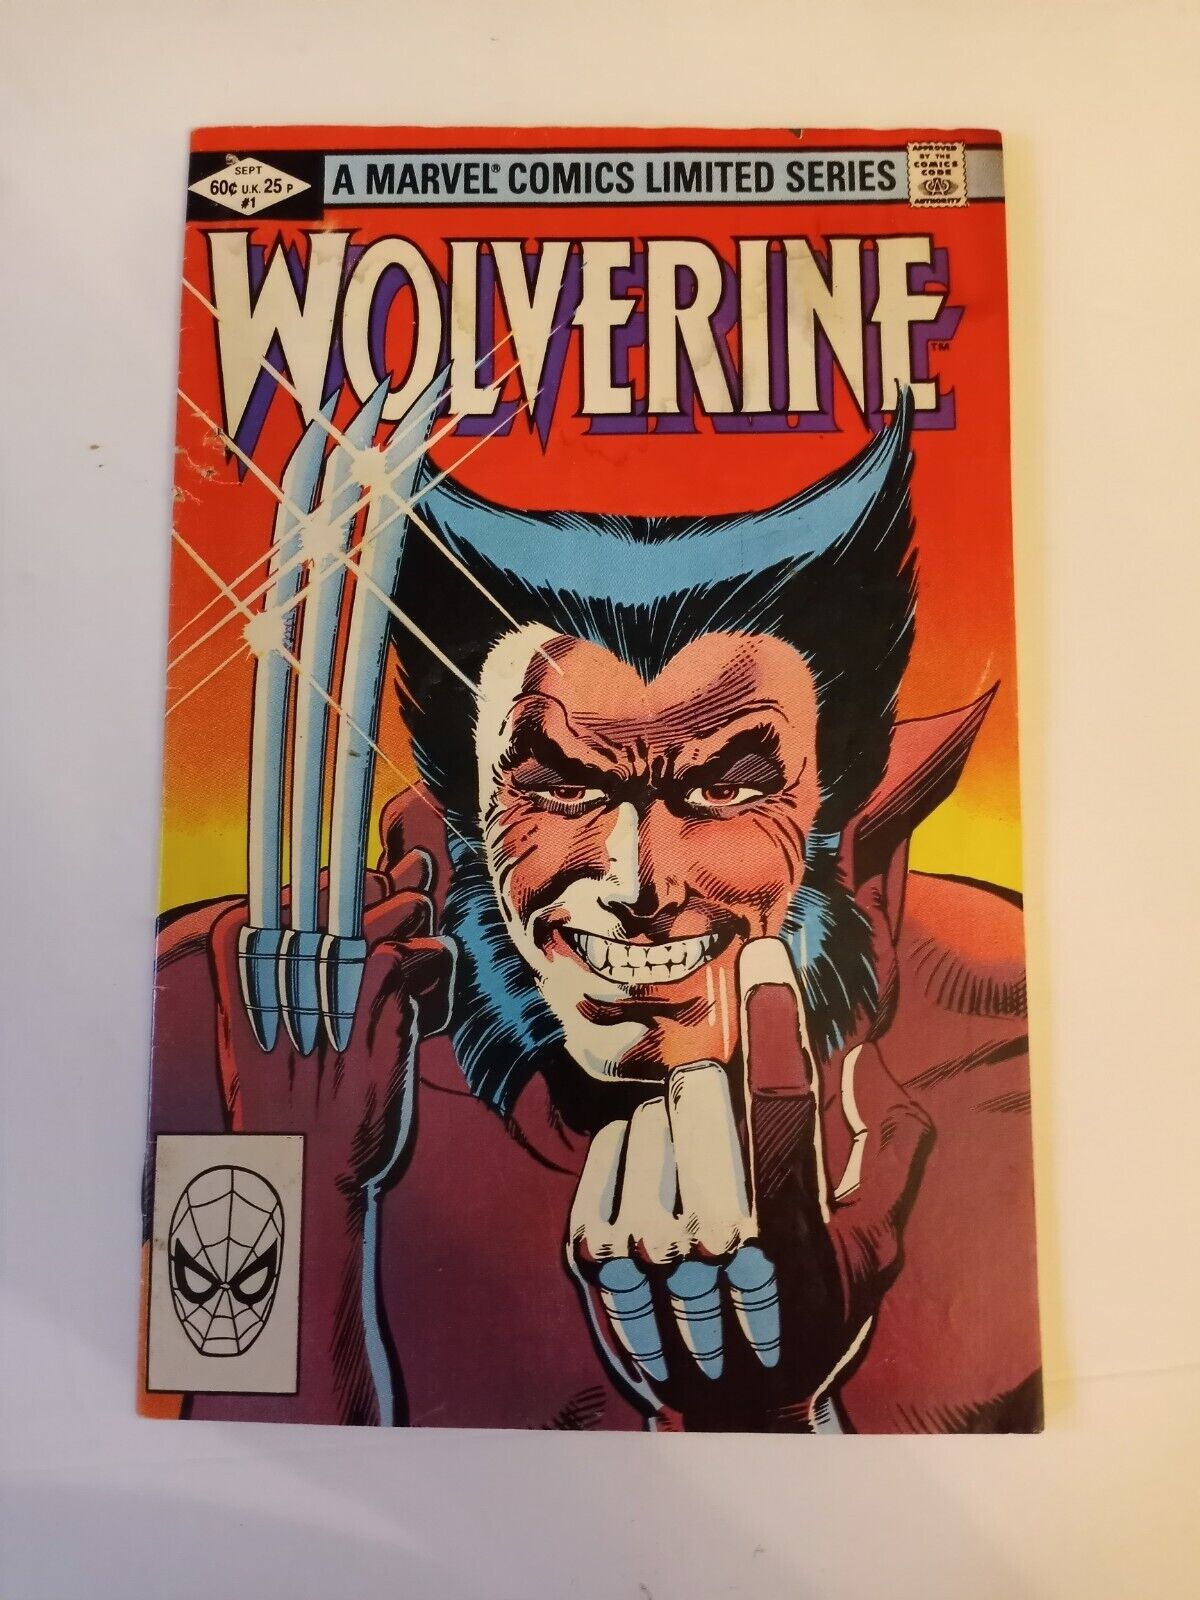 Wolverine #1 - Marvel Comics Limited Series (1982) Frank Miller Reader Copy Good